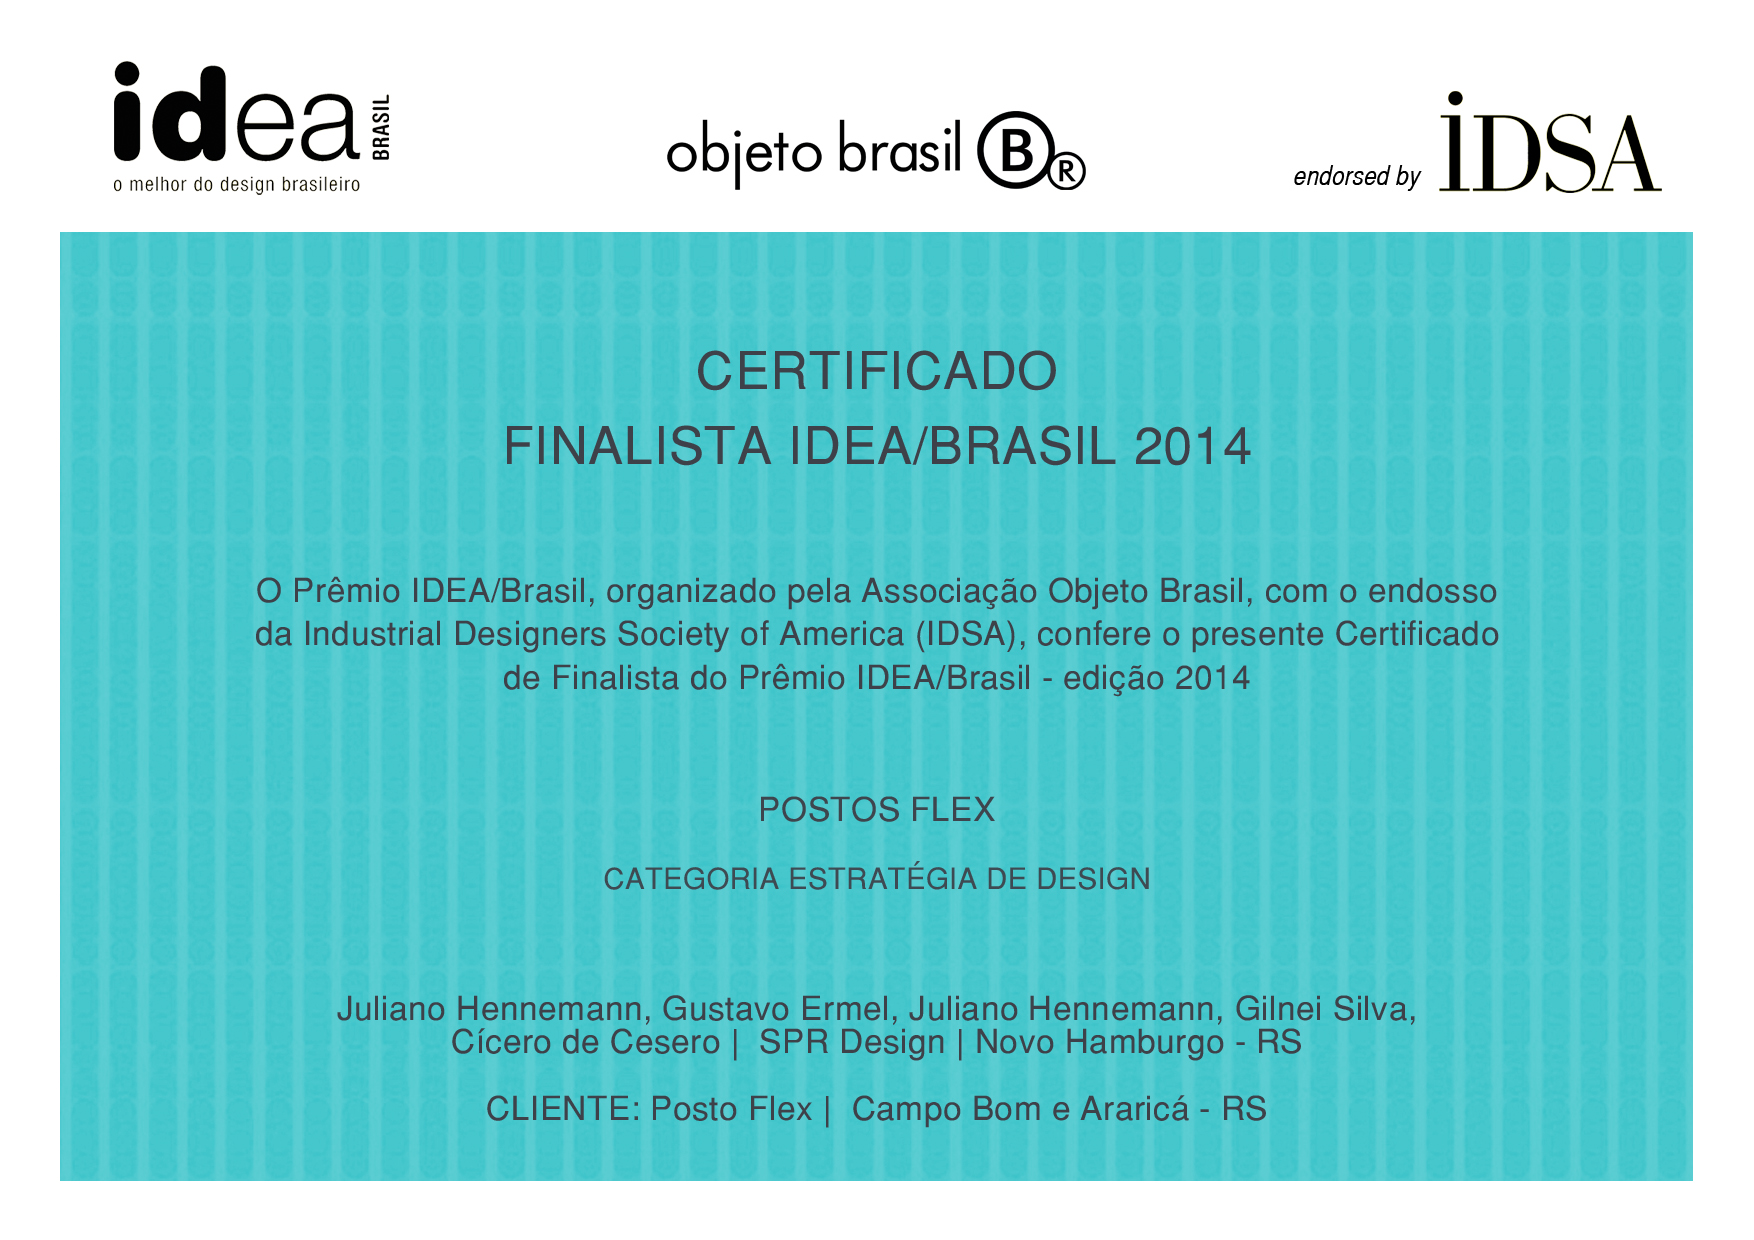 Design Premiado - Postos Flex é finalista do Idea Brasil 2014